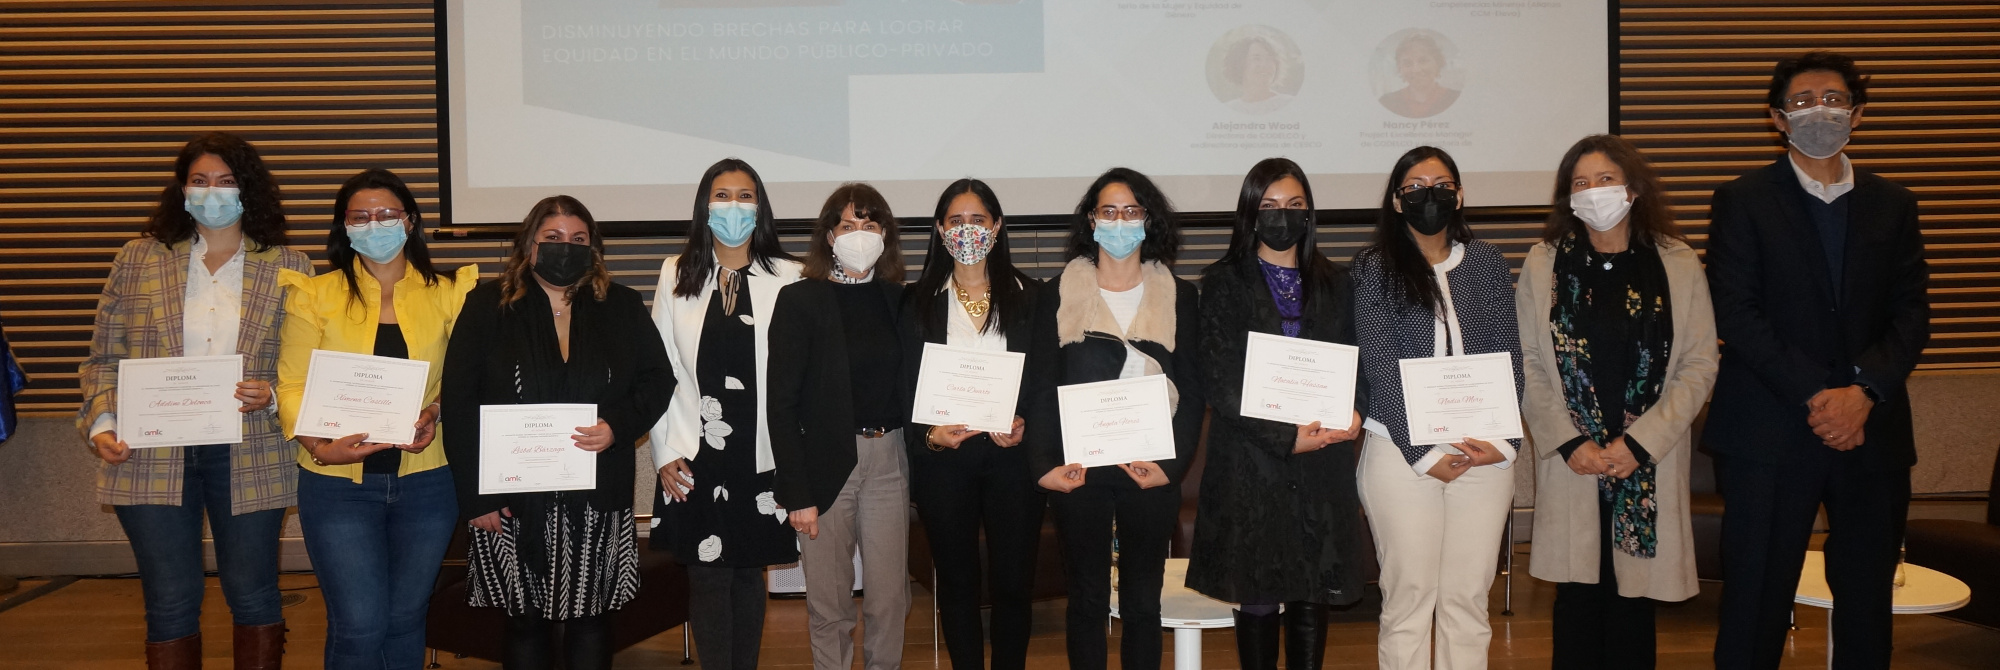 AMTC marca un hito: nueve investigadoras se incorporan al Centro gracias a concursos orientados a mujeres